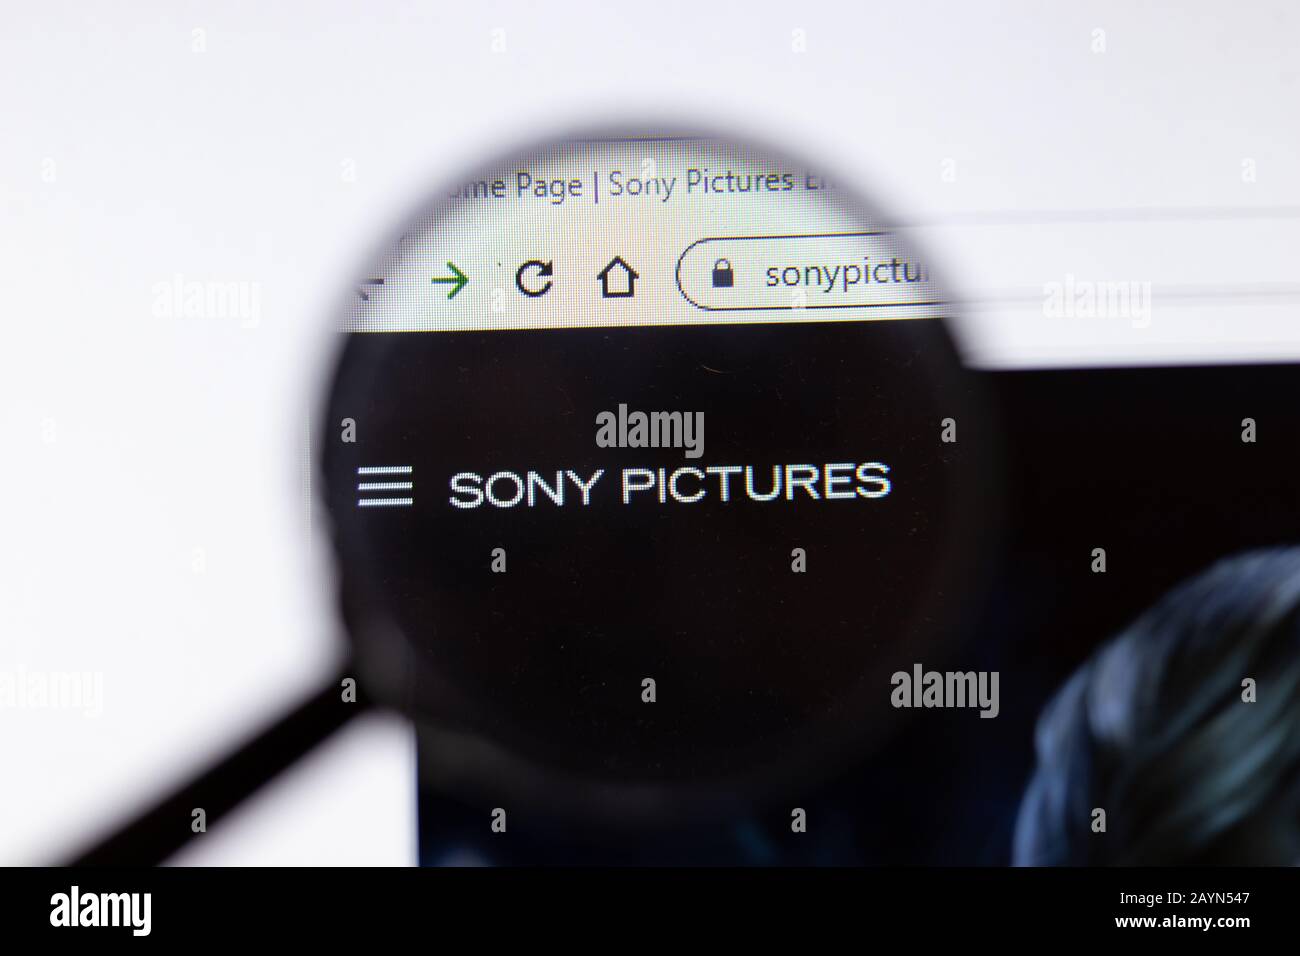 Saint-Petersburg, Russie - 18 février 2020: Sony Pictures Entertainment Company site web logo sur l'écran d'ordinateur portable. Écran avec icône, illustratif Banque D'Images